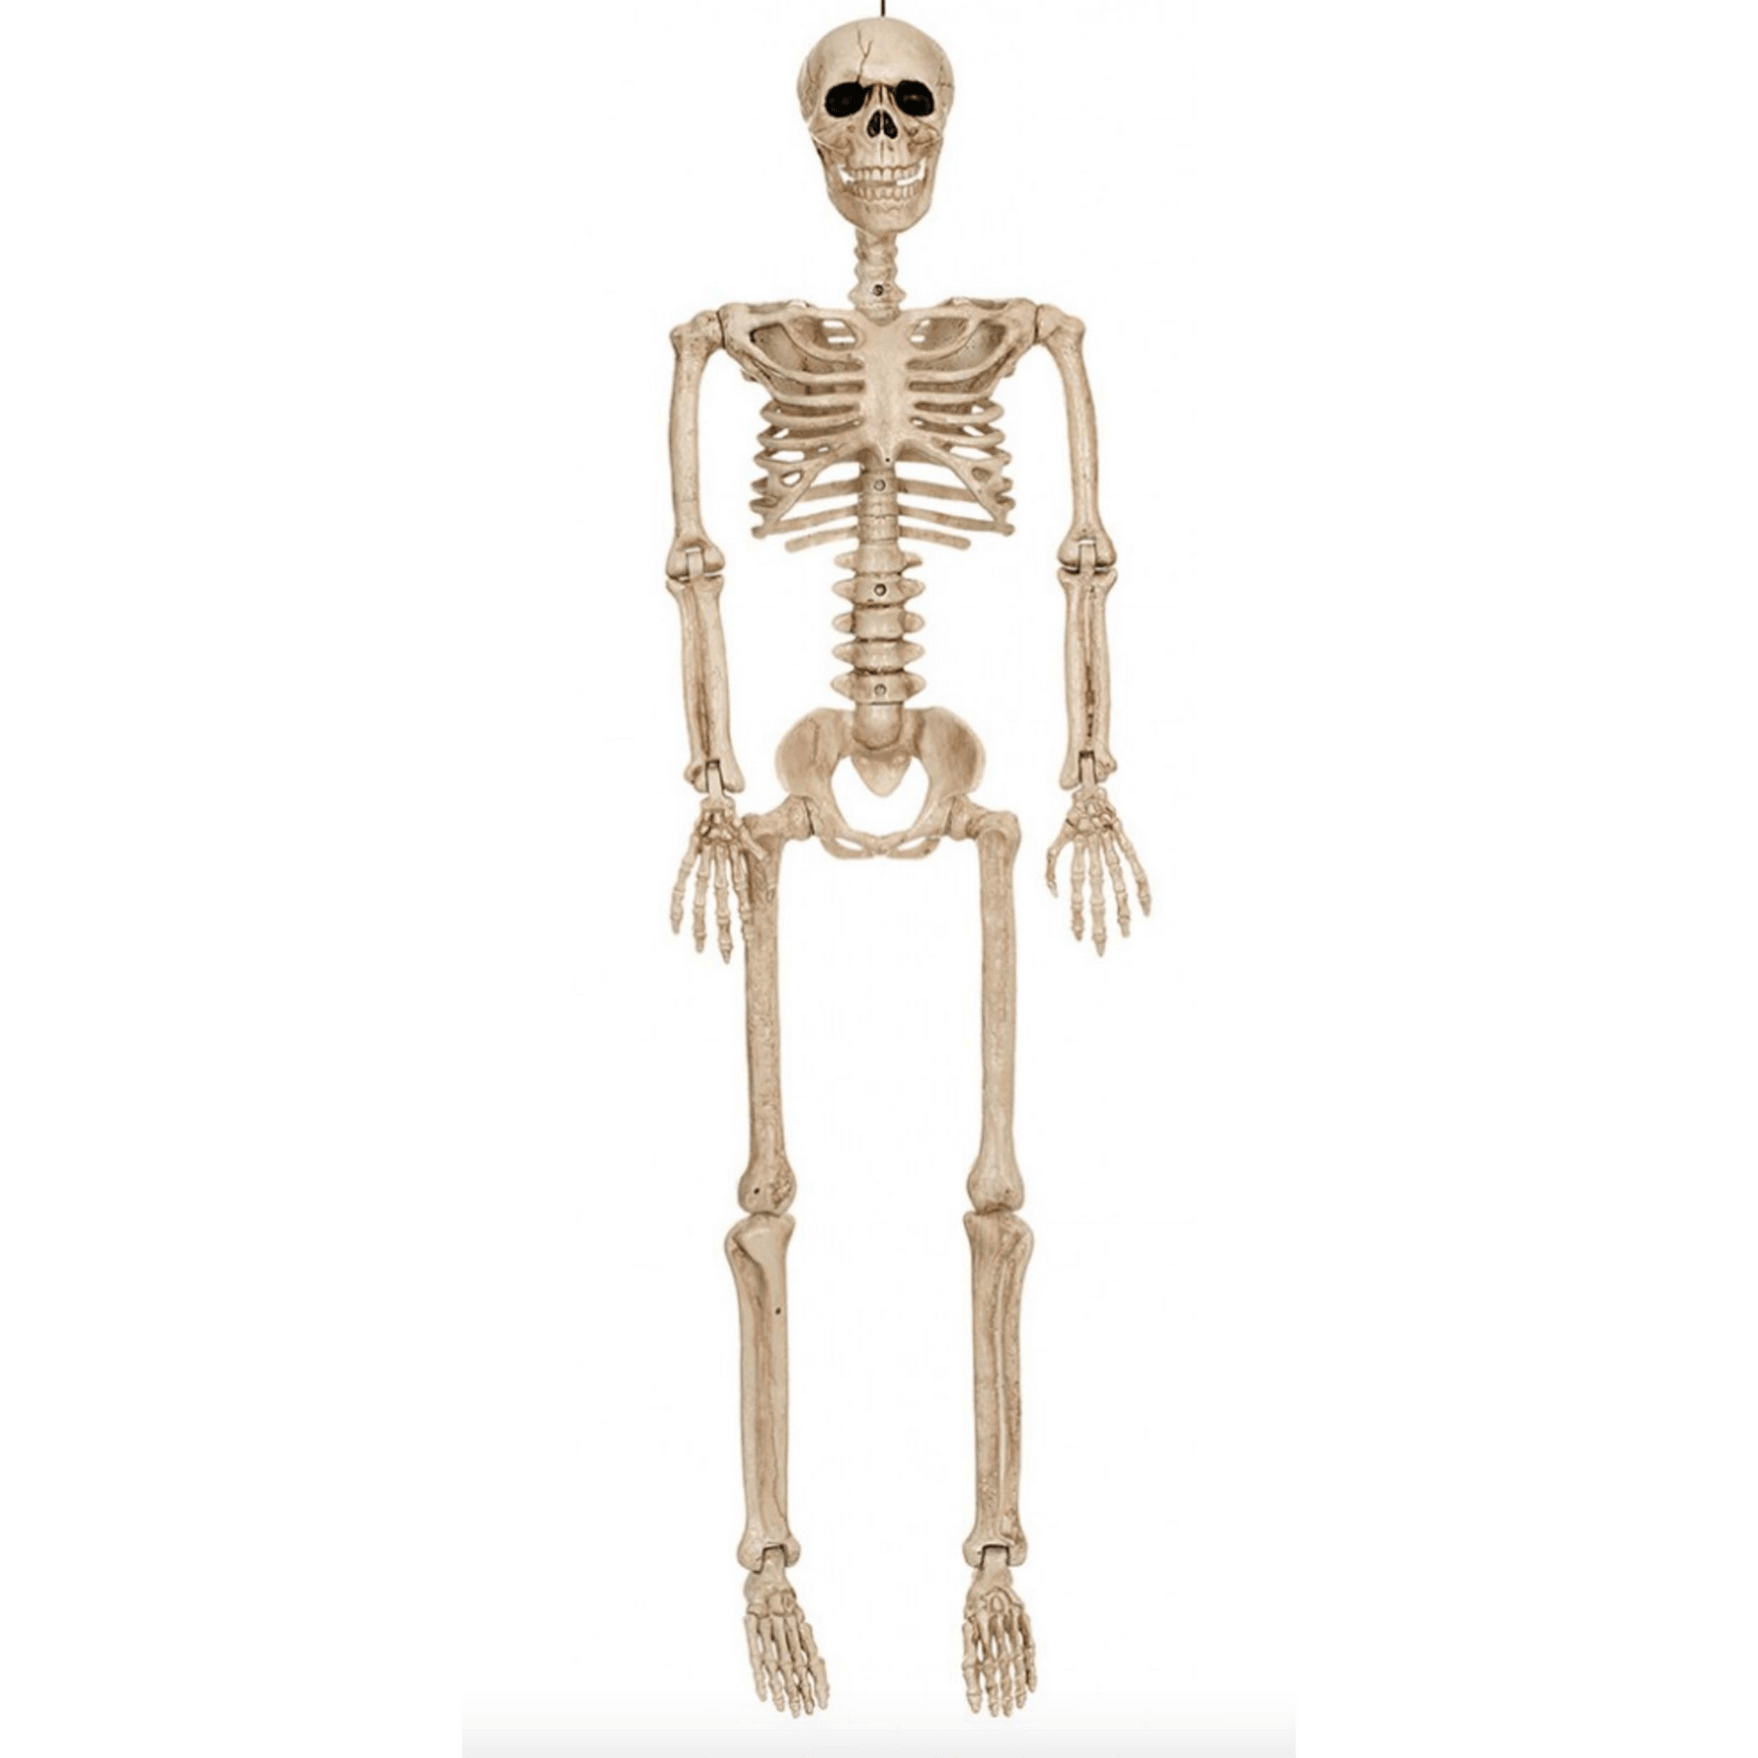 60" Skeleton Prop